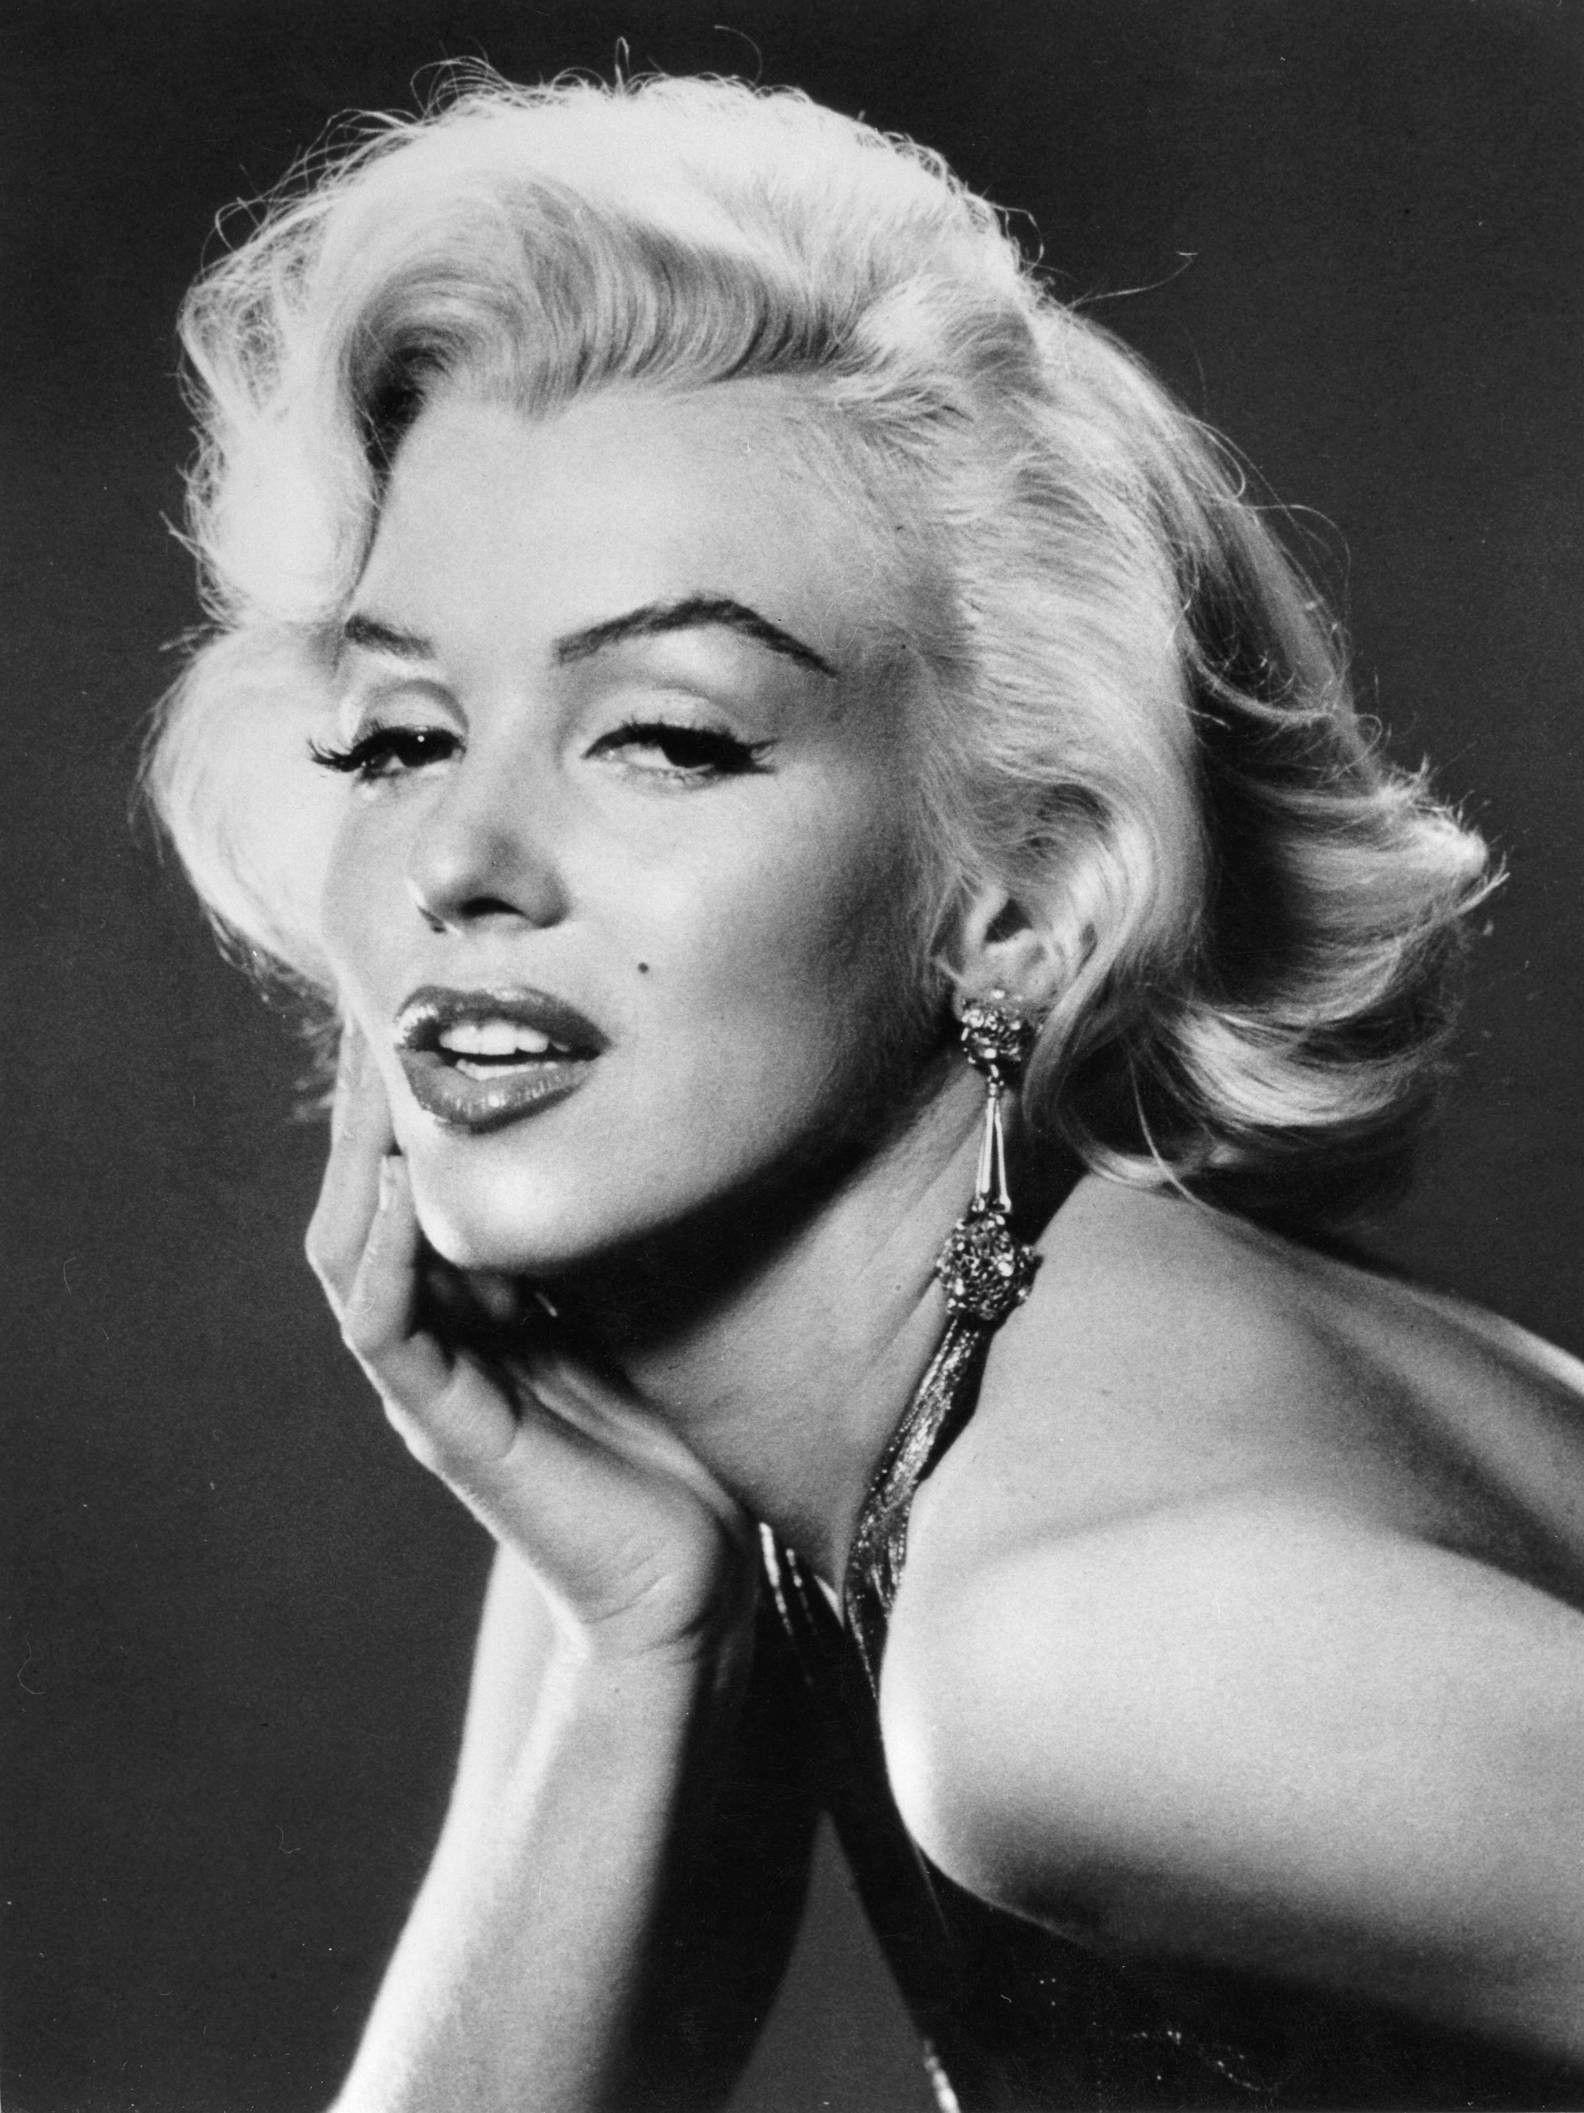 Marilyn Monroe iPhone Wallpapers - Top Free Marilyn Monroe iPhone ...